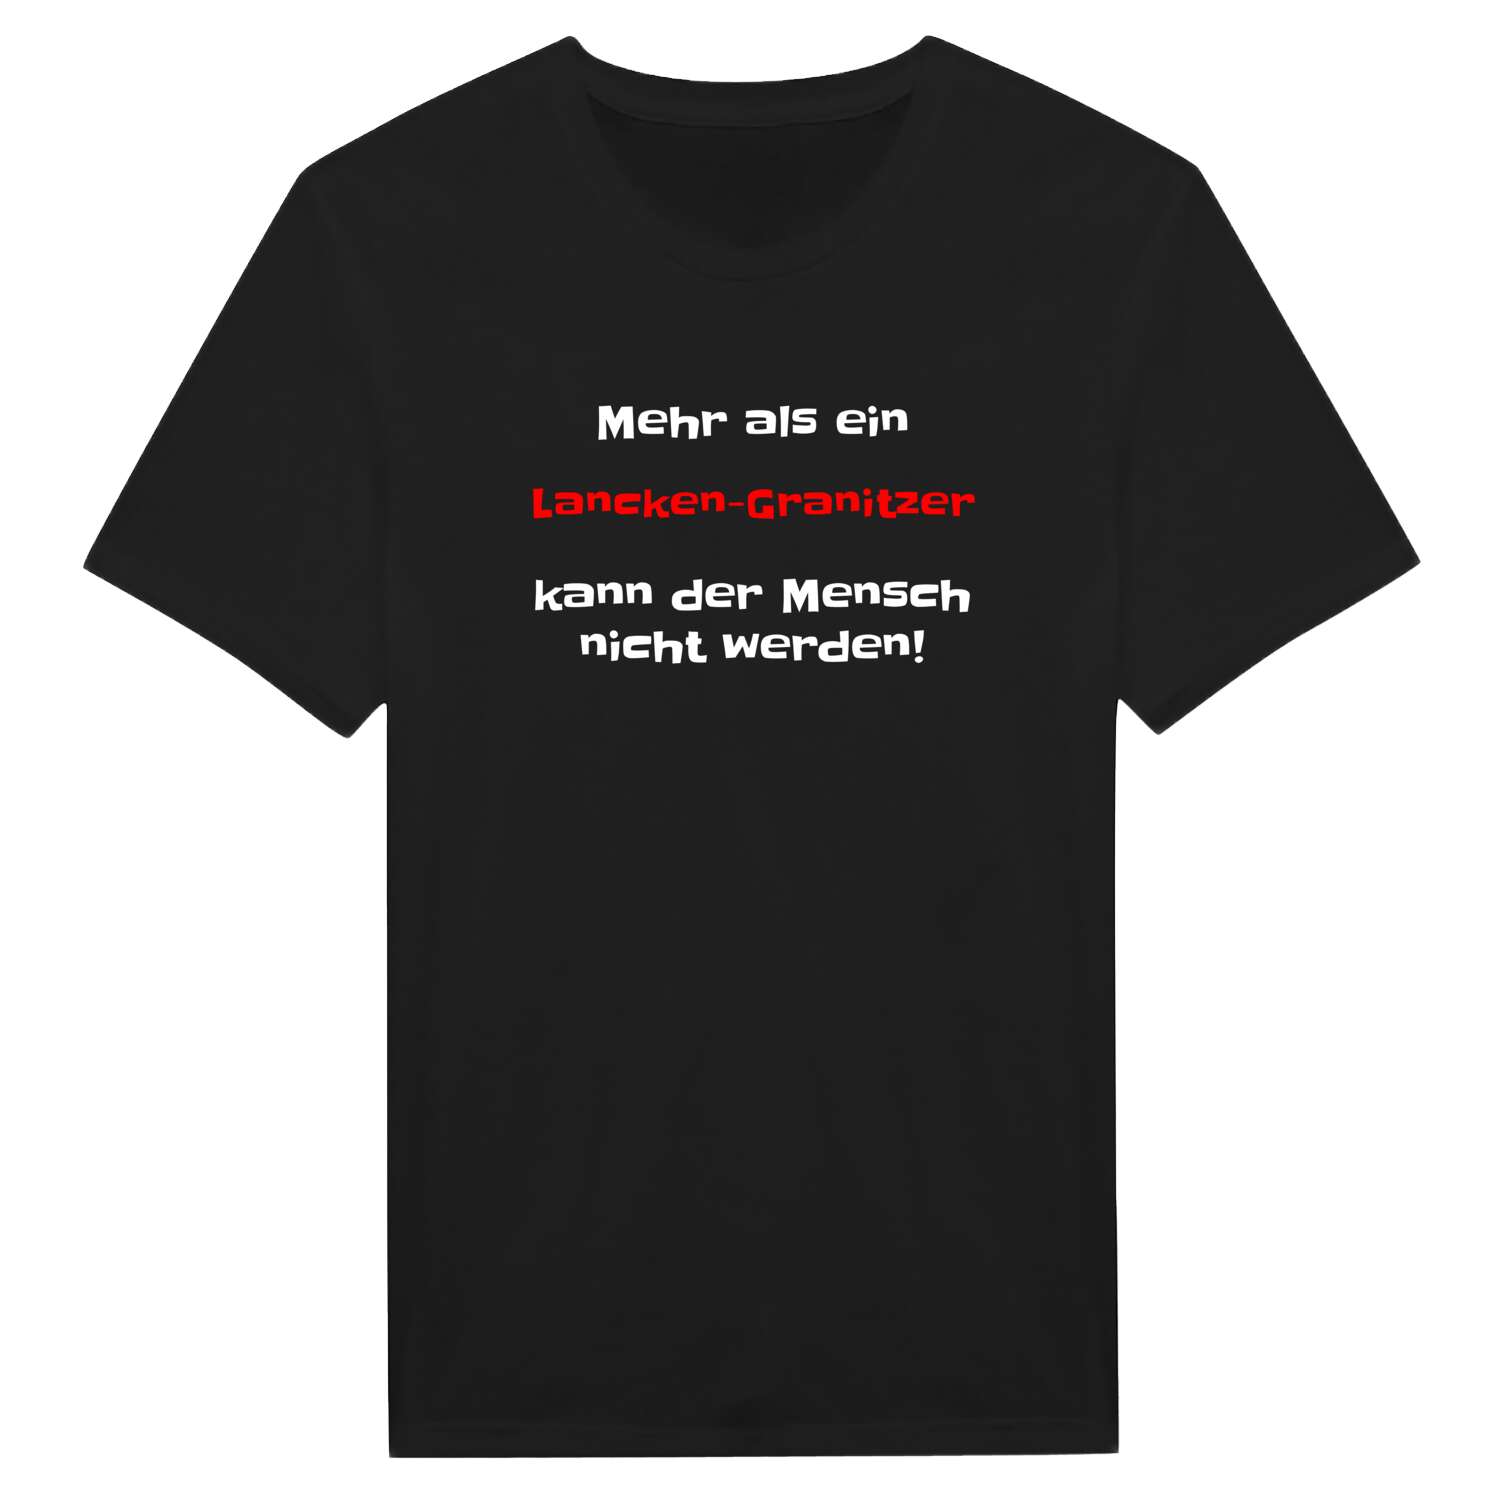 Lancken-Granitz T-Shirt »Mehr als ein«